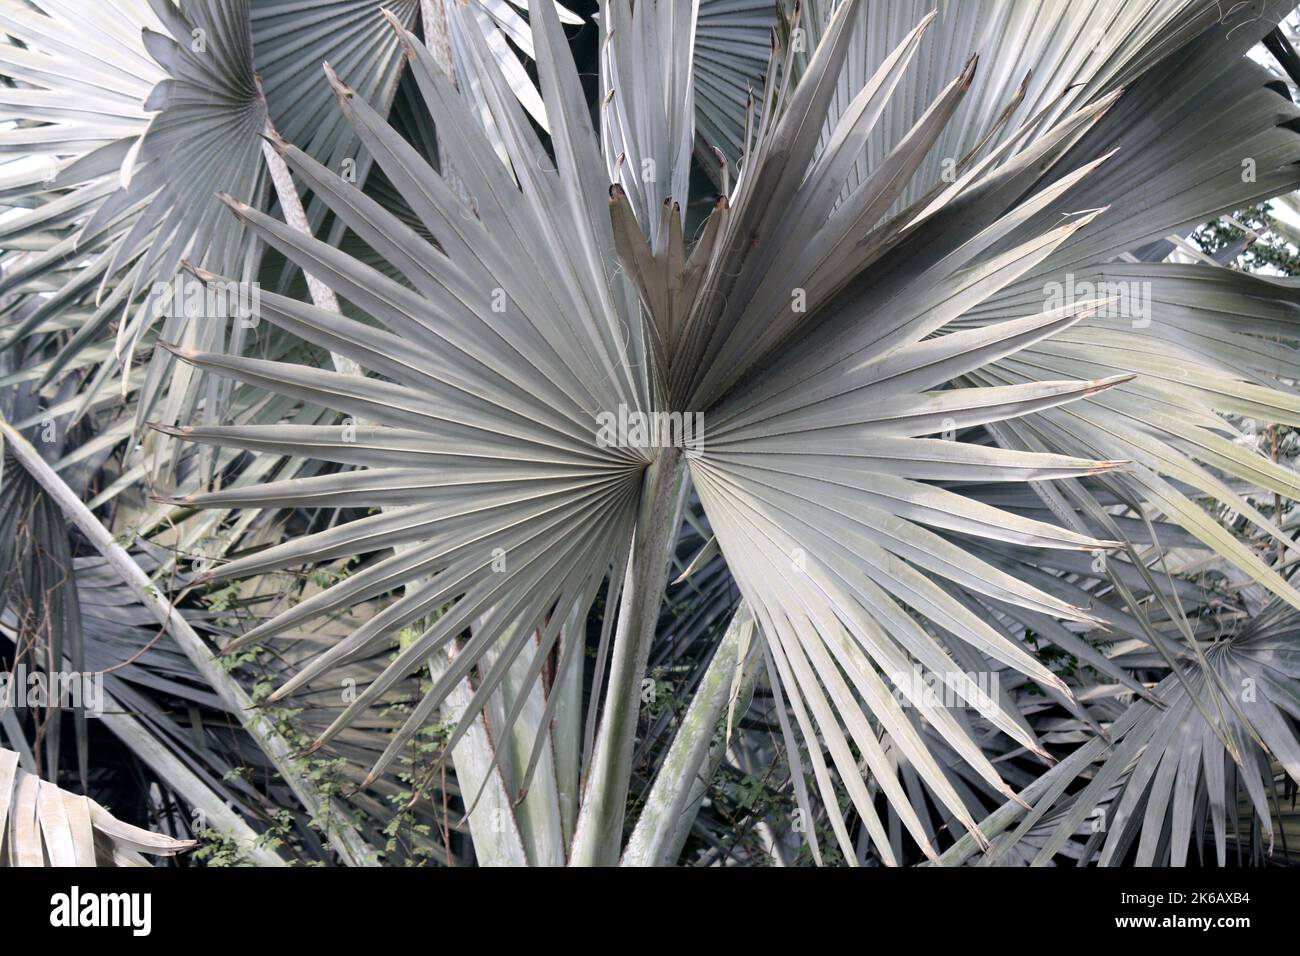 Palmier Bismarck (Bismarckia noblis) avec d'énormes feuilles gris argenté dans un parc : (pix SShukla) Banque D'Images